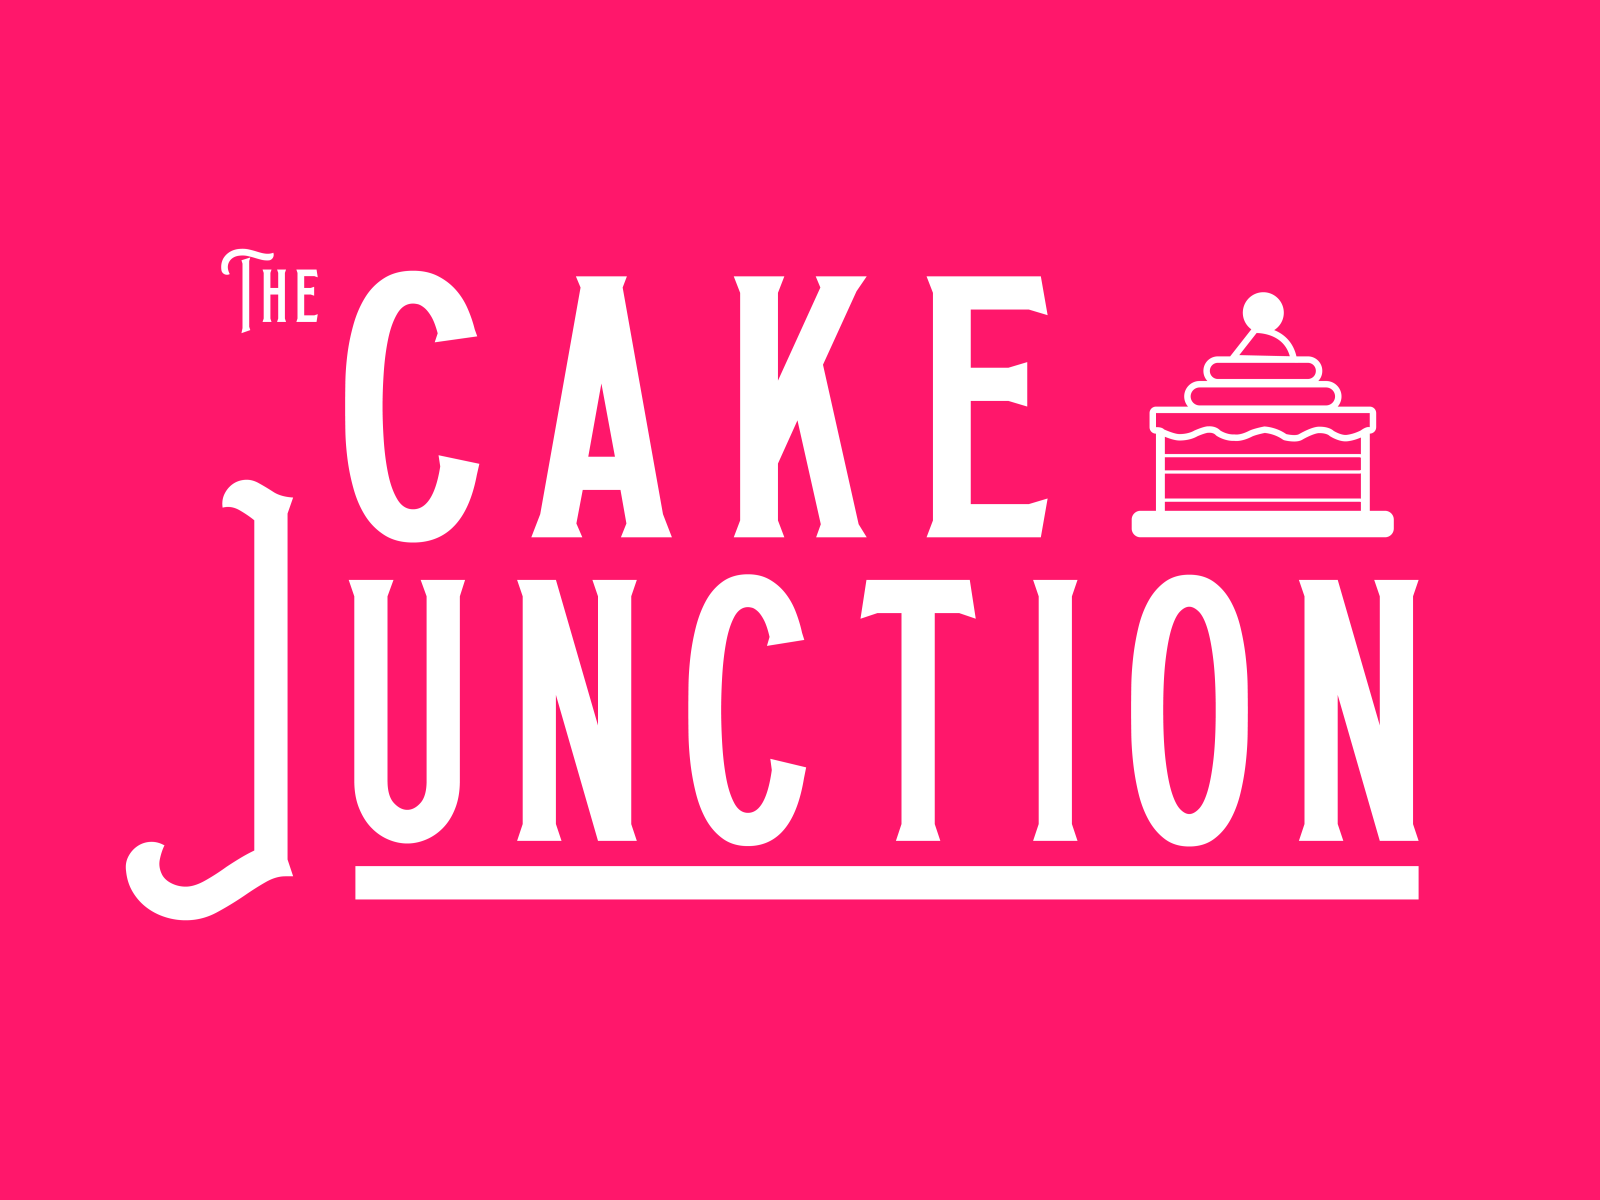 Cake junction, Pune - Restaurant reviews